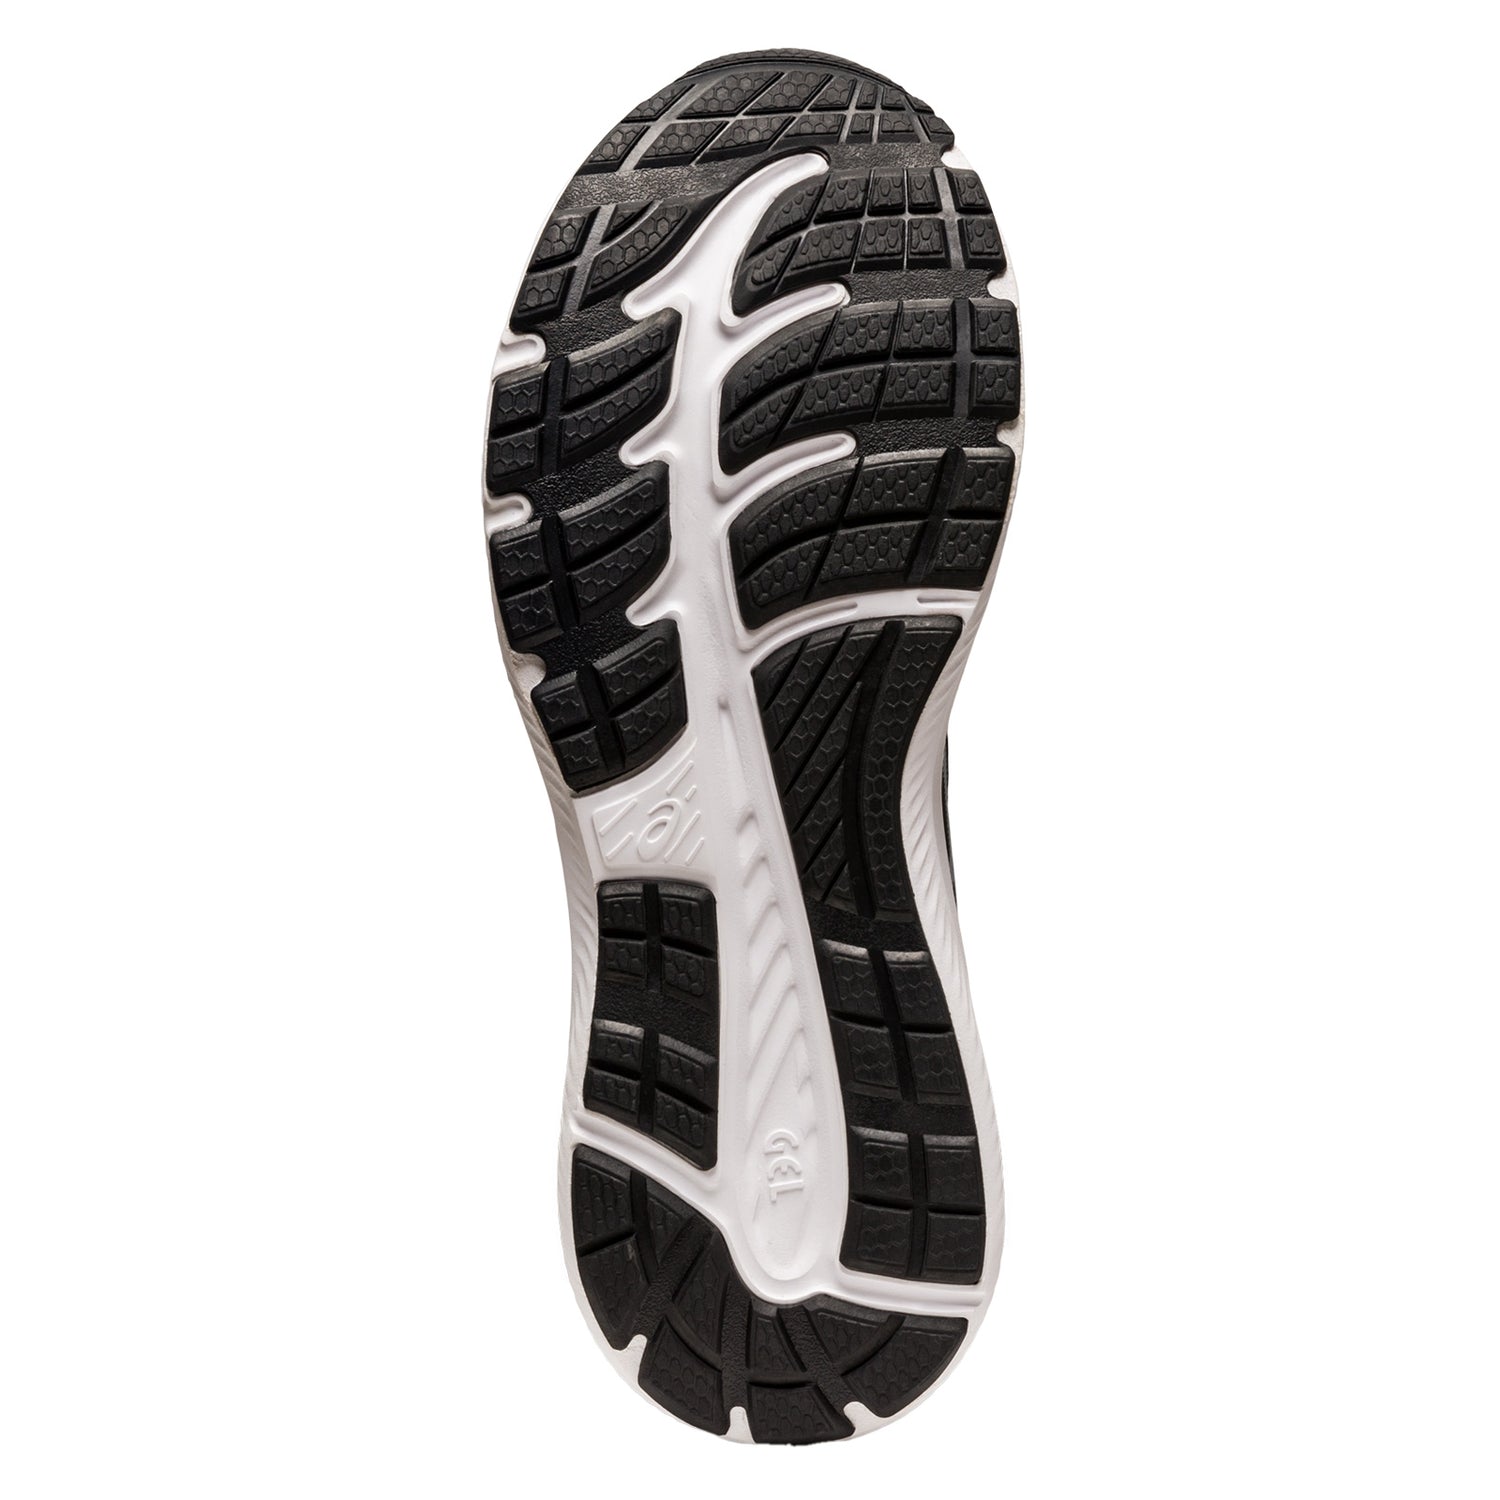 Peltz Shoes  Men's ASICS GEL-Contend 8 Running Shoe - Extra Wide Width BLACK 1011B493.002